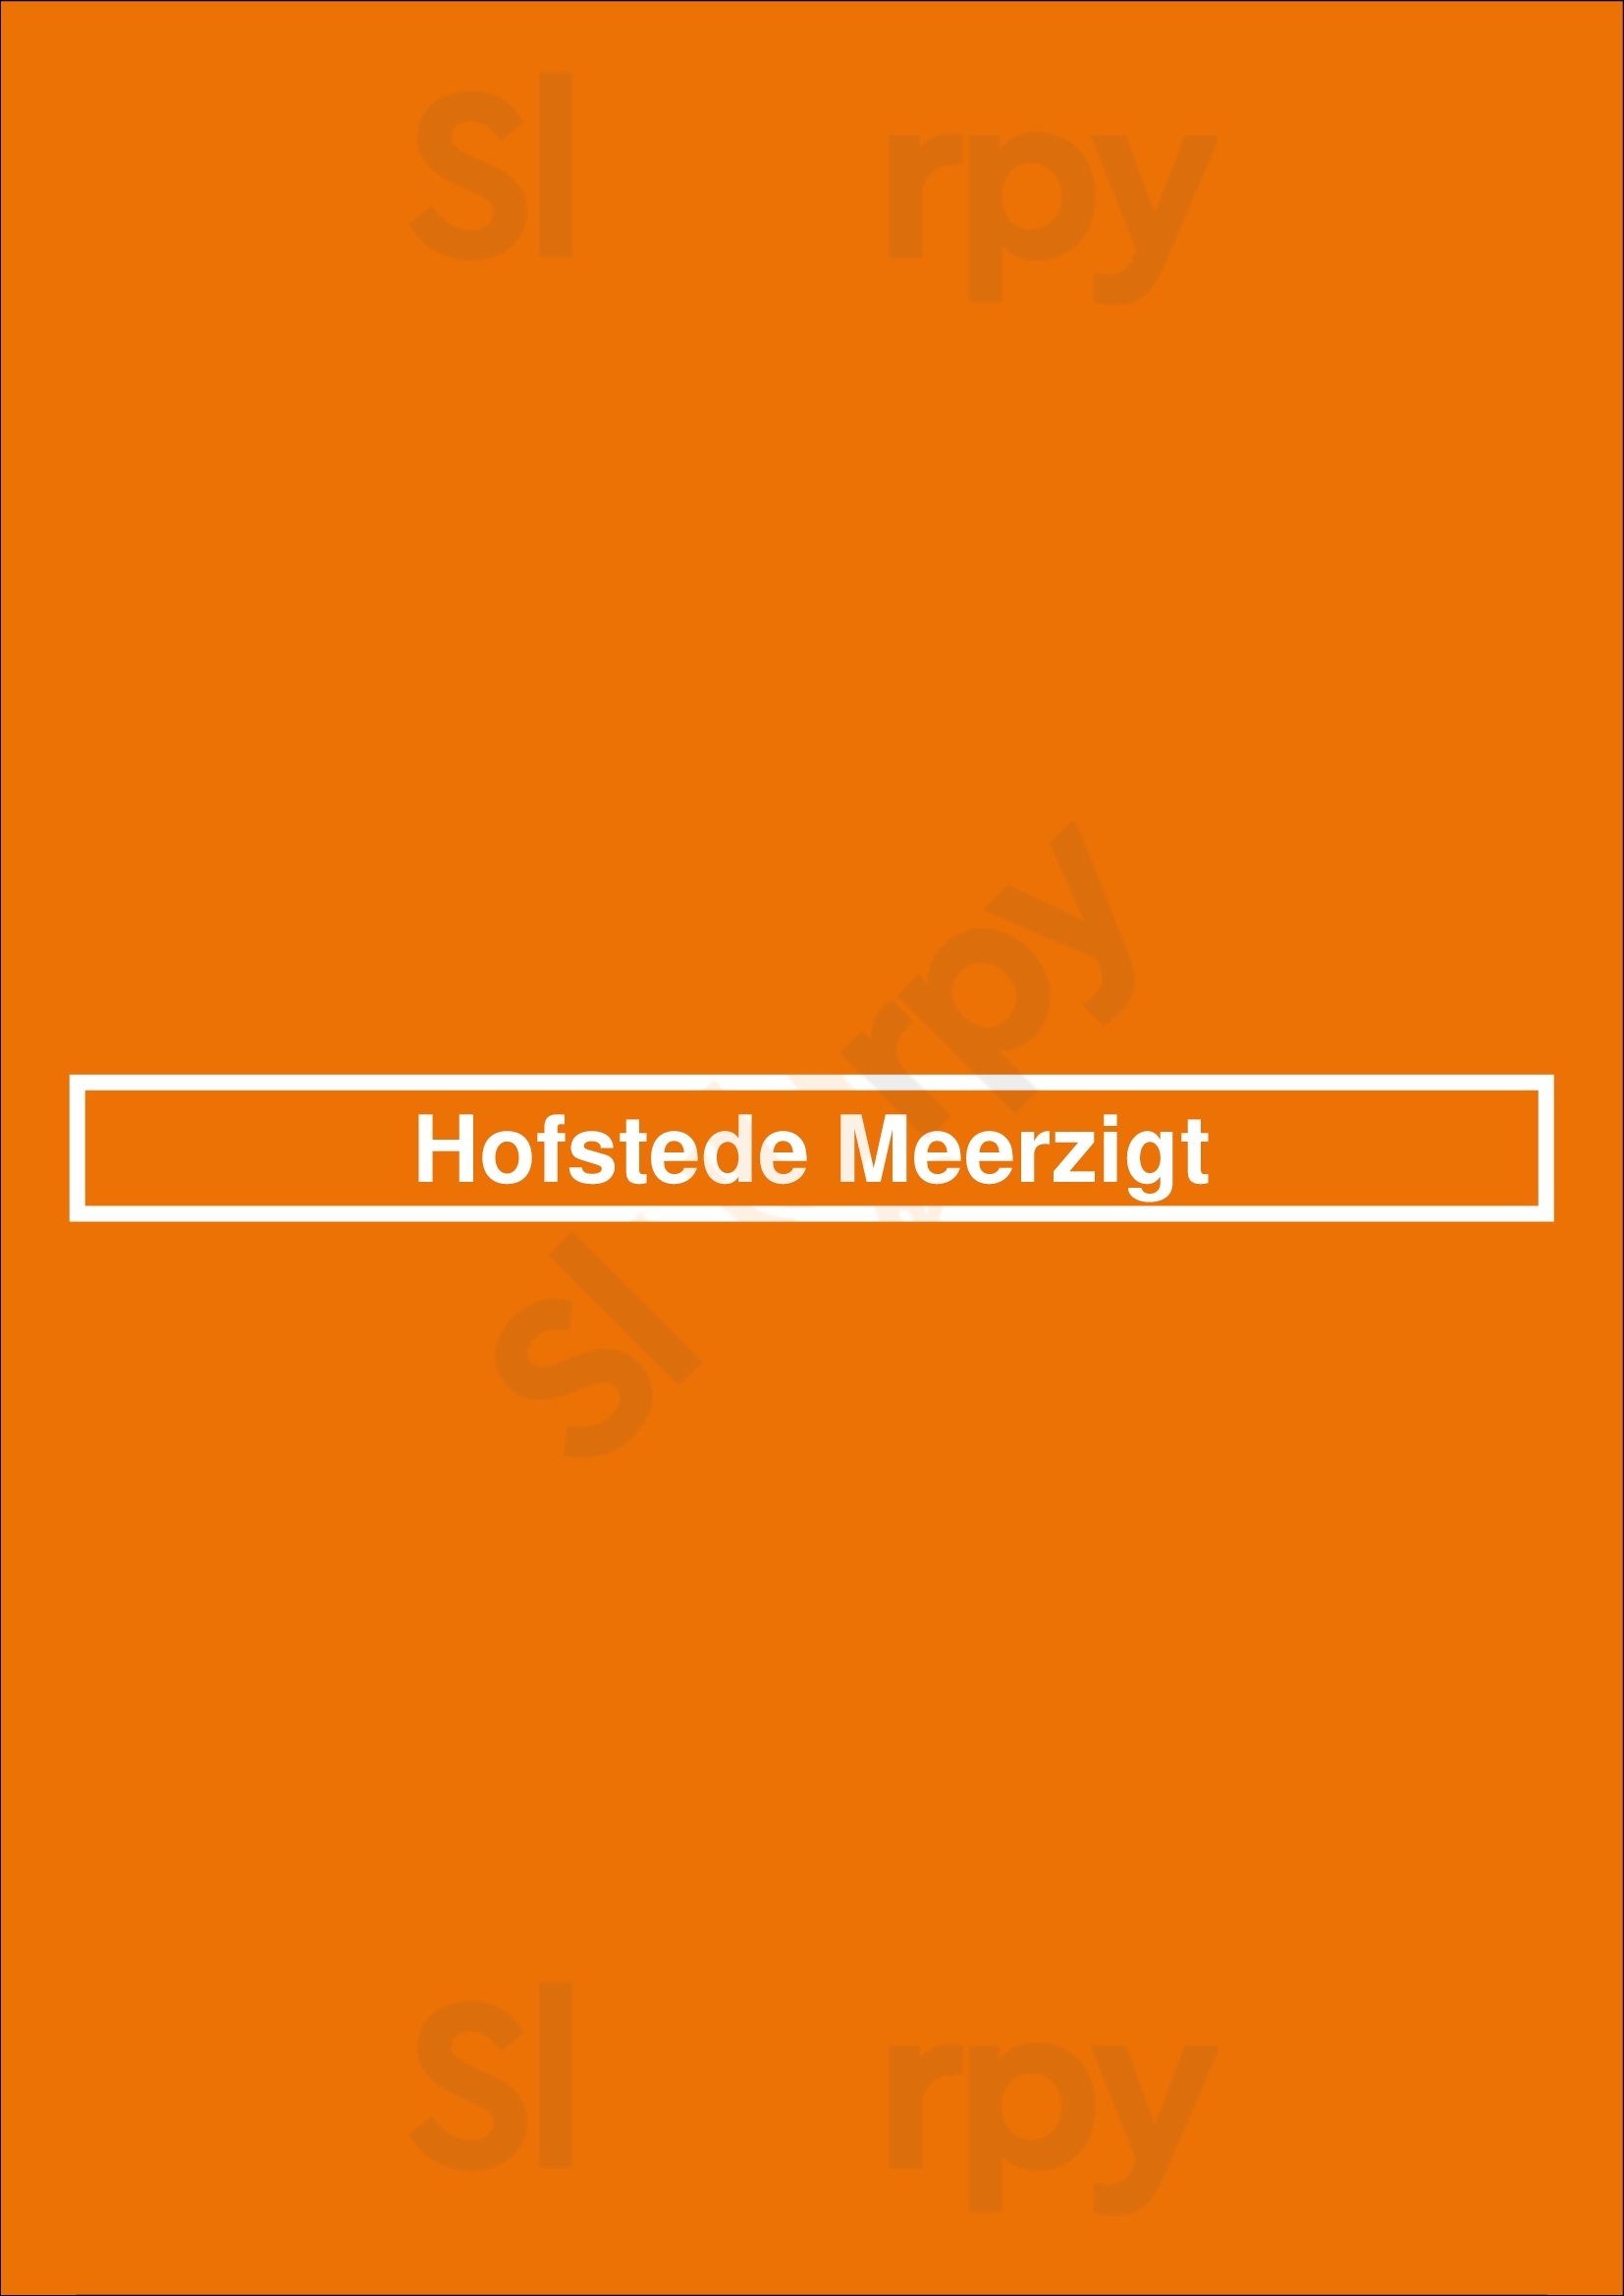 Hofstede Meerzigt Zoetermeer Menu - 1